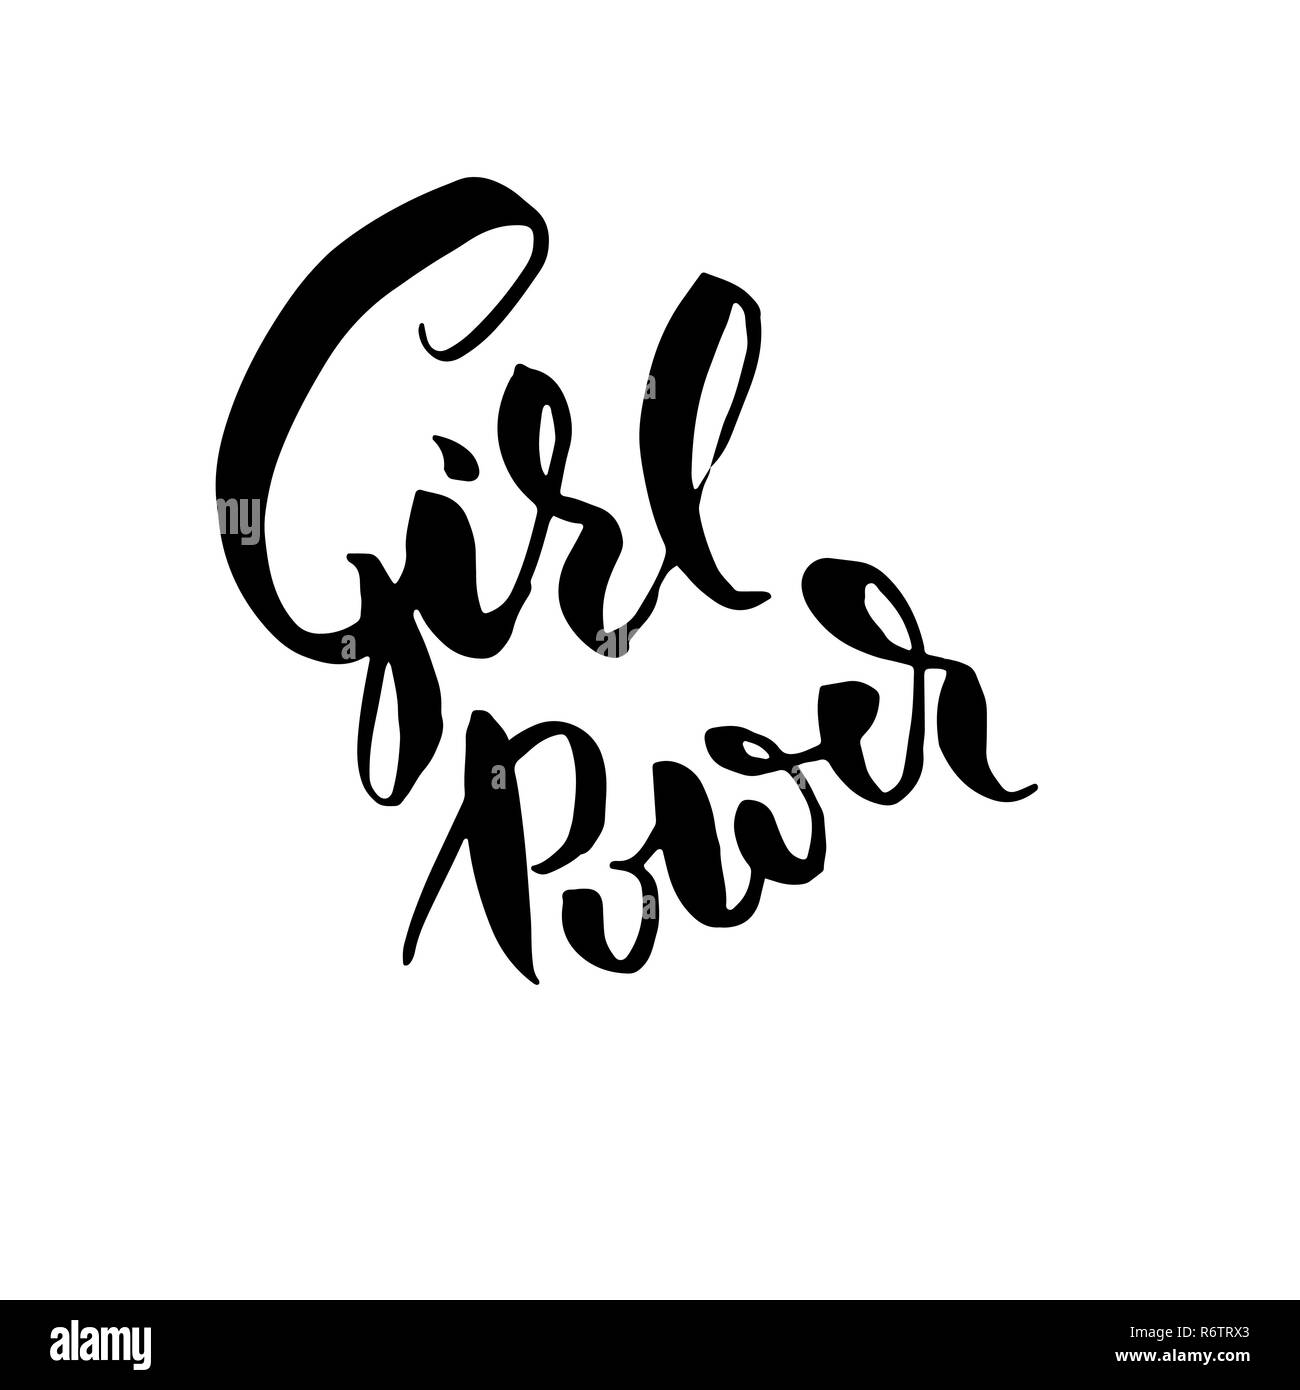 Girl power. Hand drawn brush lettering. Modern calligraphy. Ink vector illustration. Stock Vector